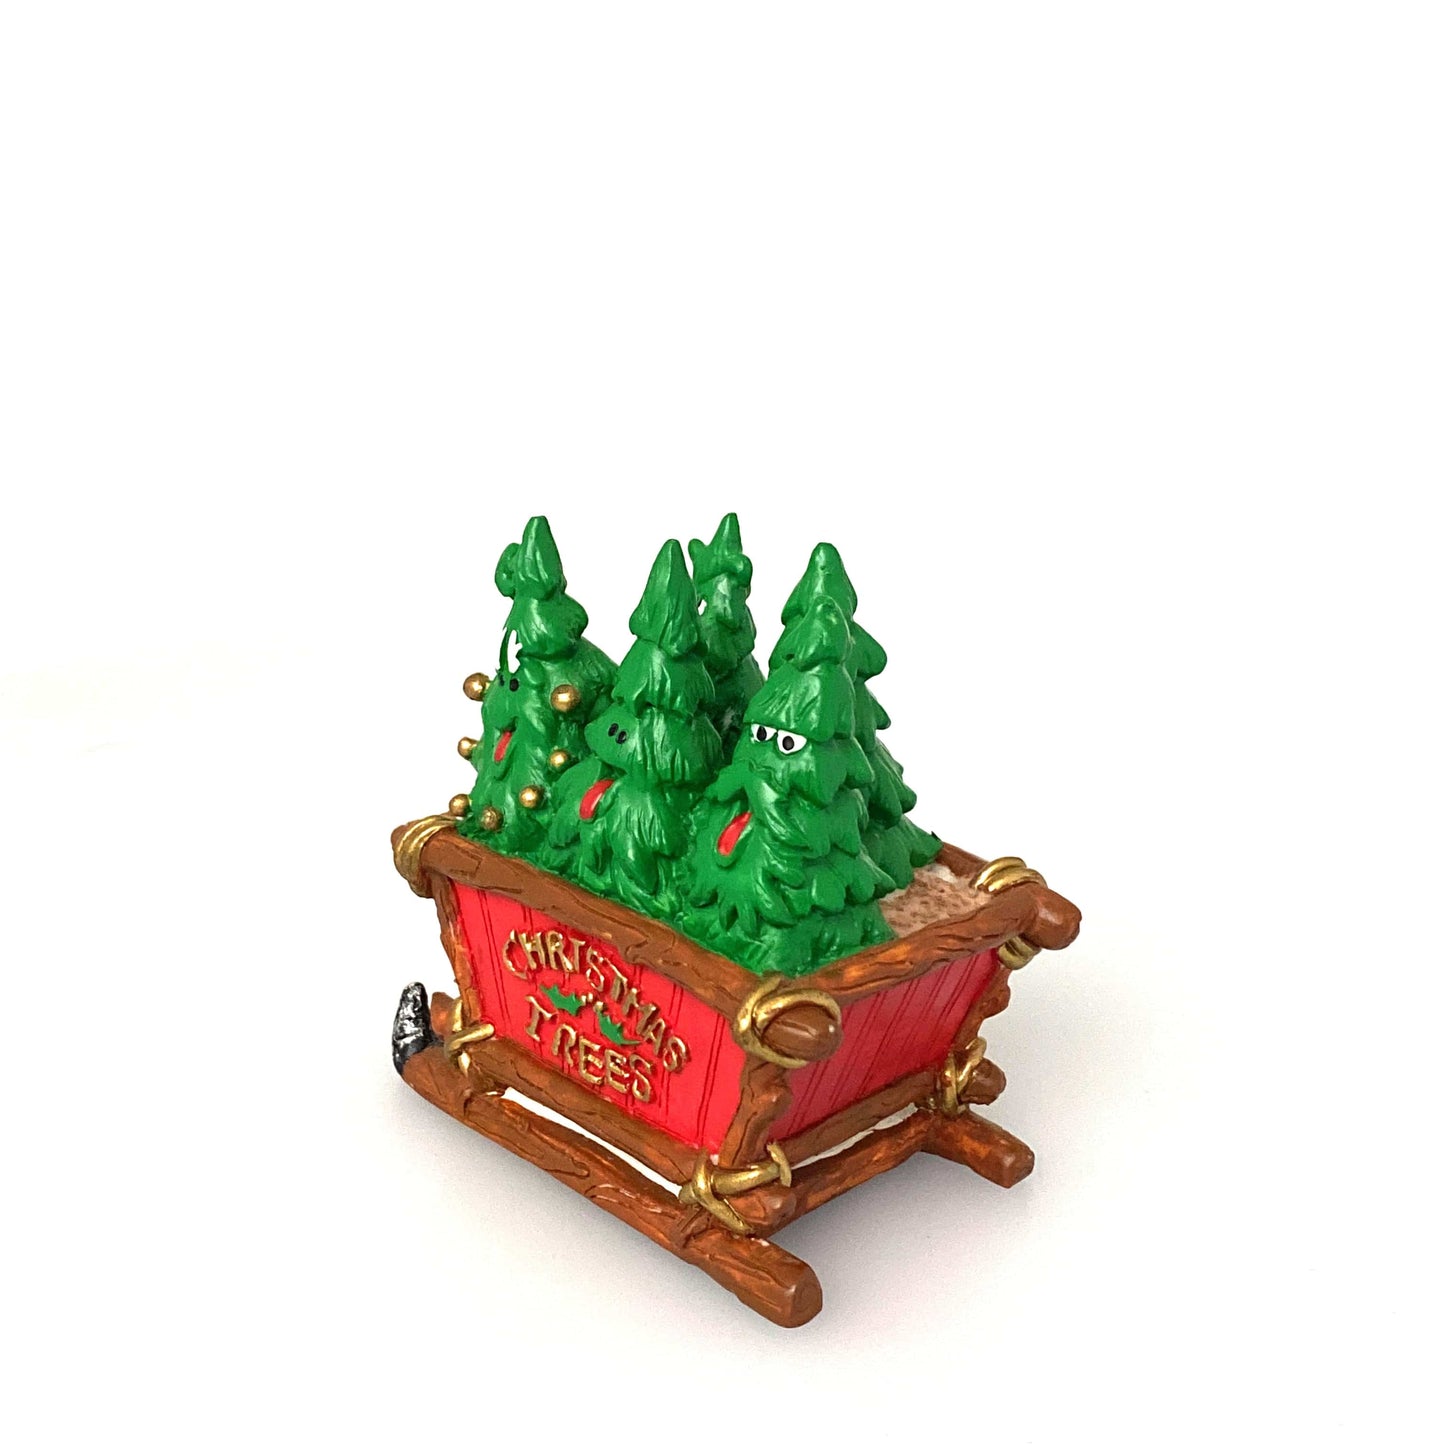 Vintage 1996 North Pole Ltd. “Christmas Tree” Seasonal Holiday Table-Top Decoration